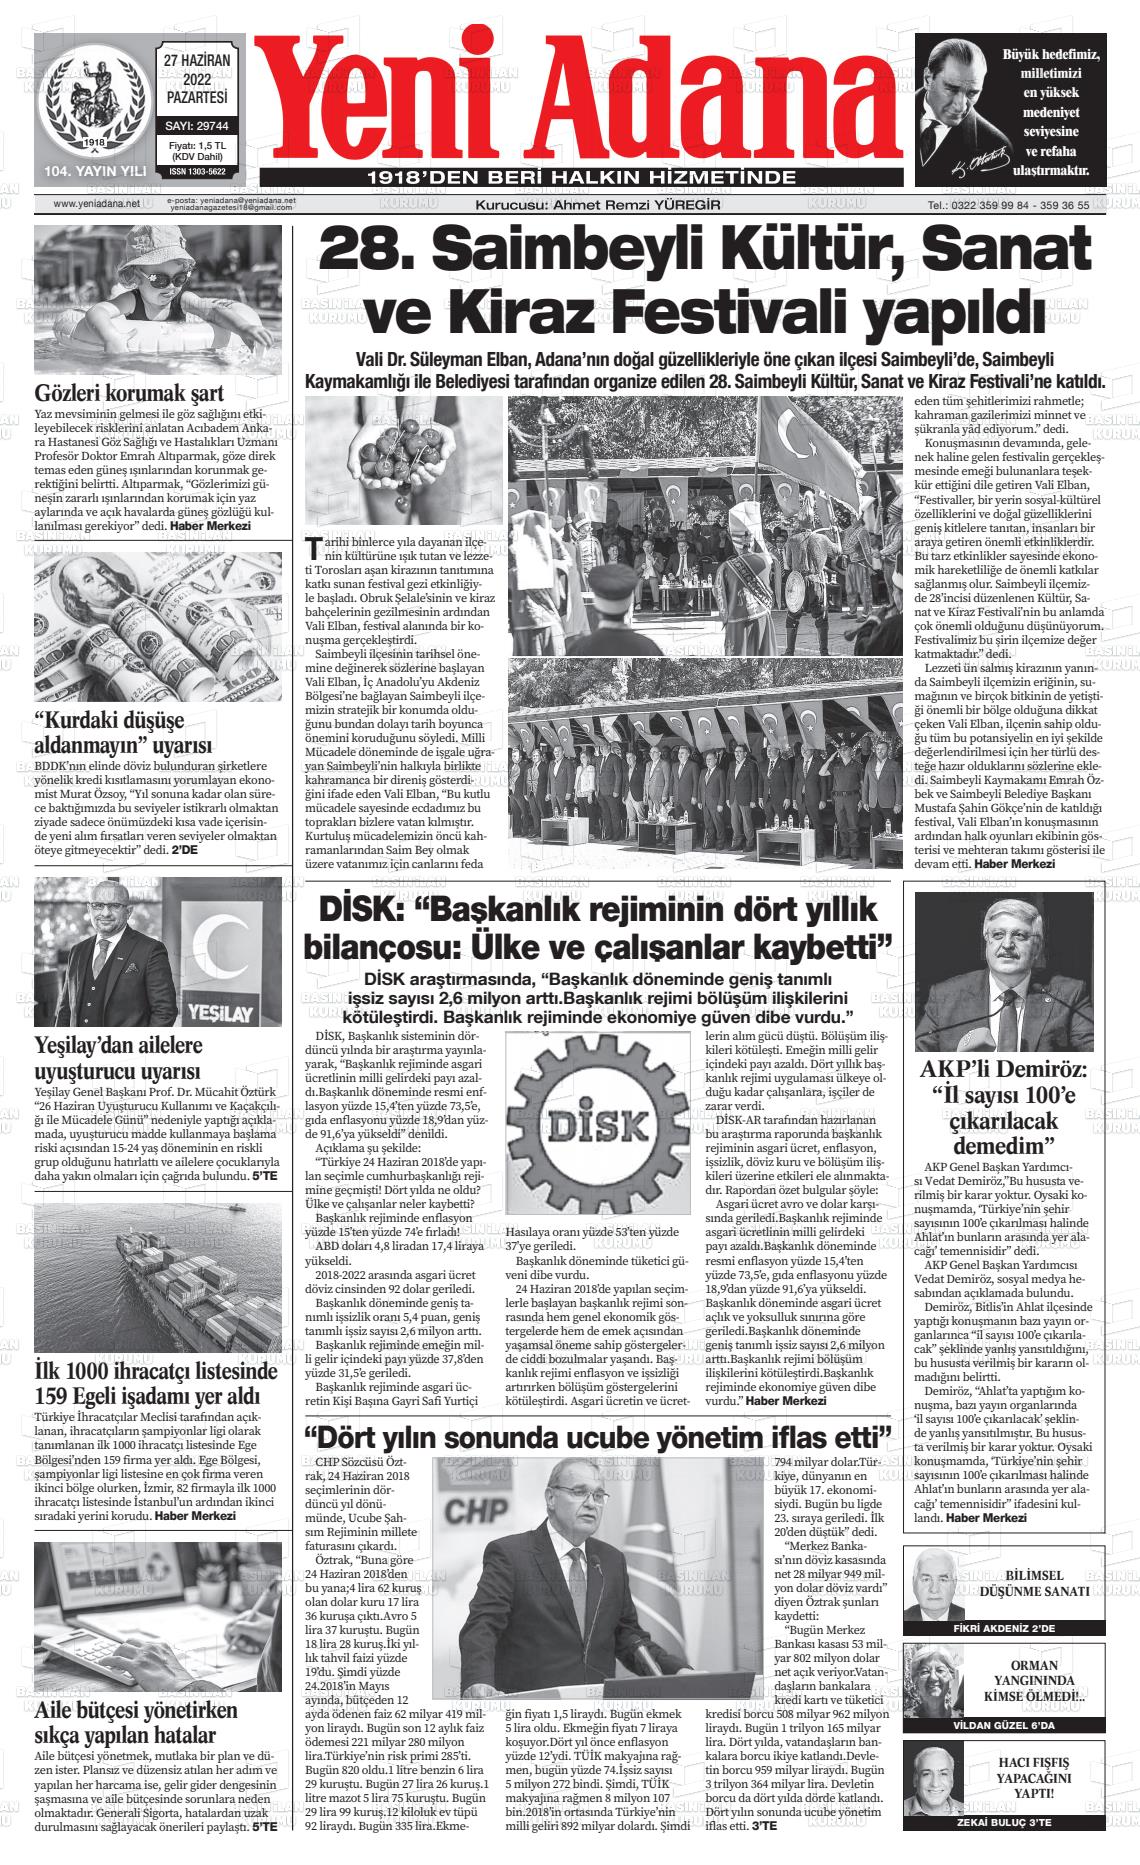 27 Haziran 2022 Yeni Adana Gazete Manşeti